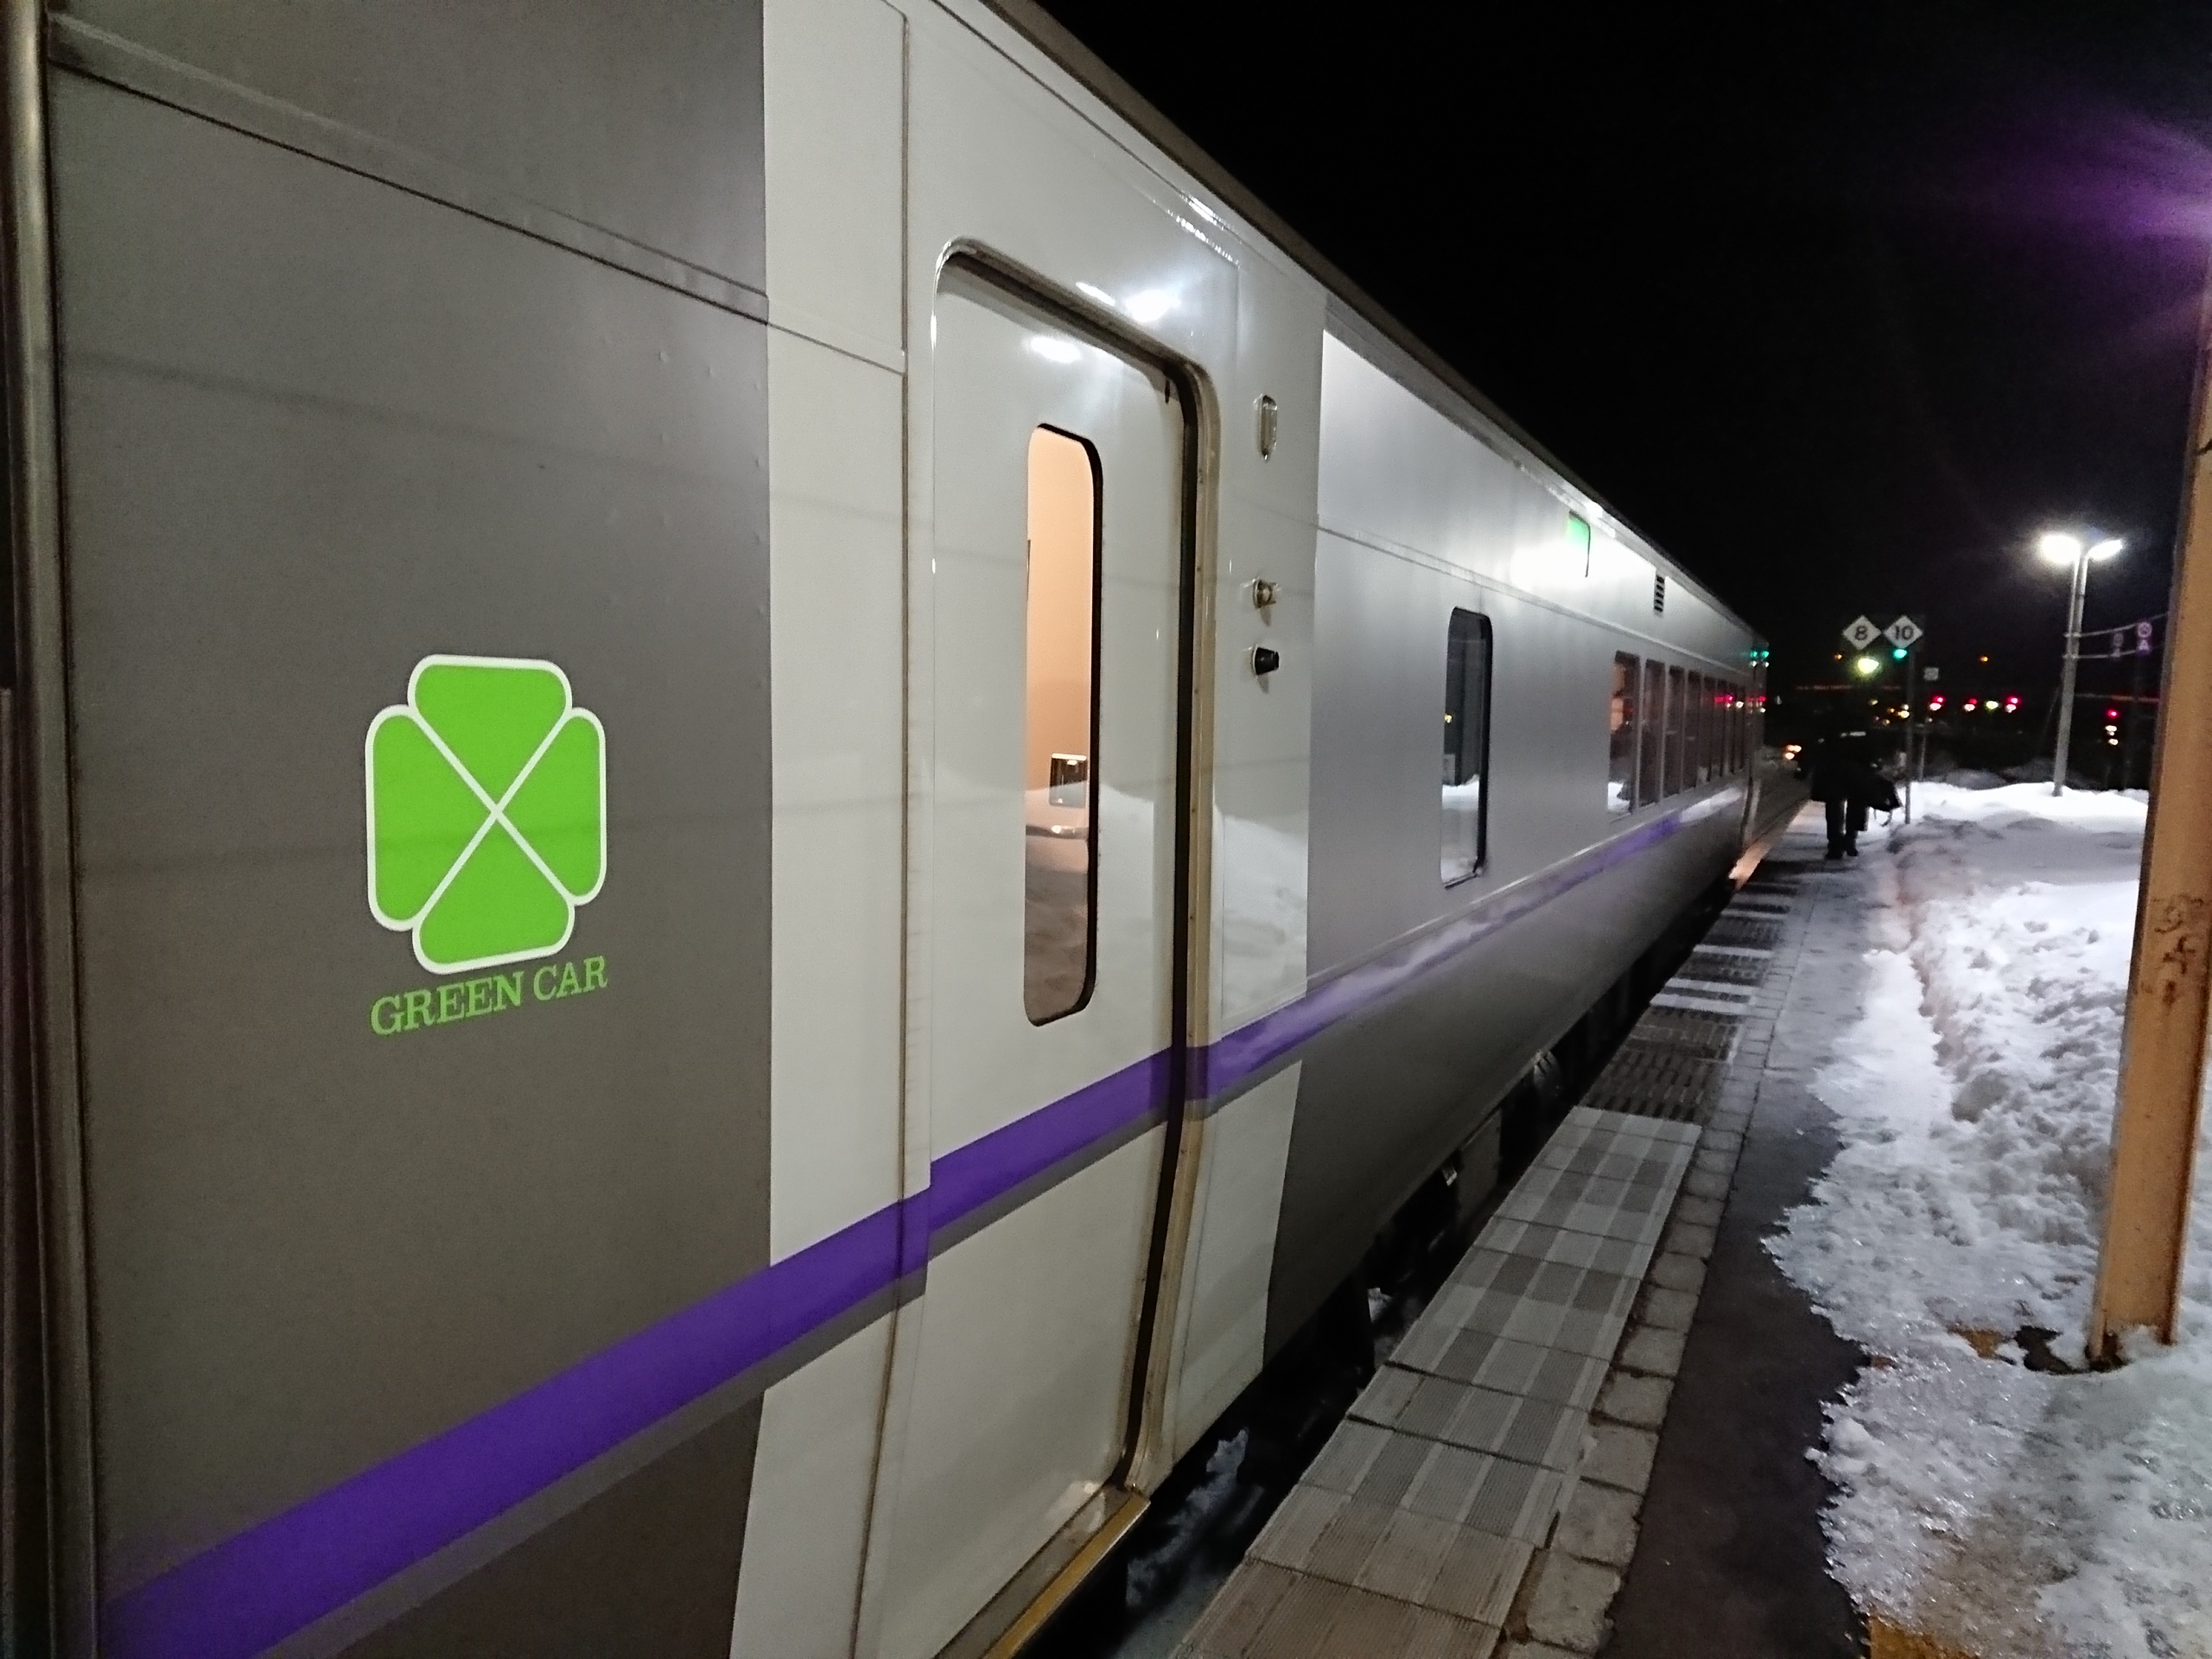 スーパー北斗 北海道新幹線 はやて E5系 グリーン車を乗り比べてみる 19 1 30 阪和線の沿線から